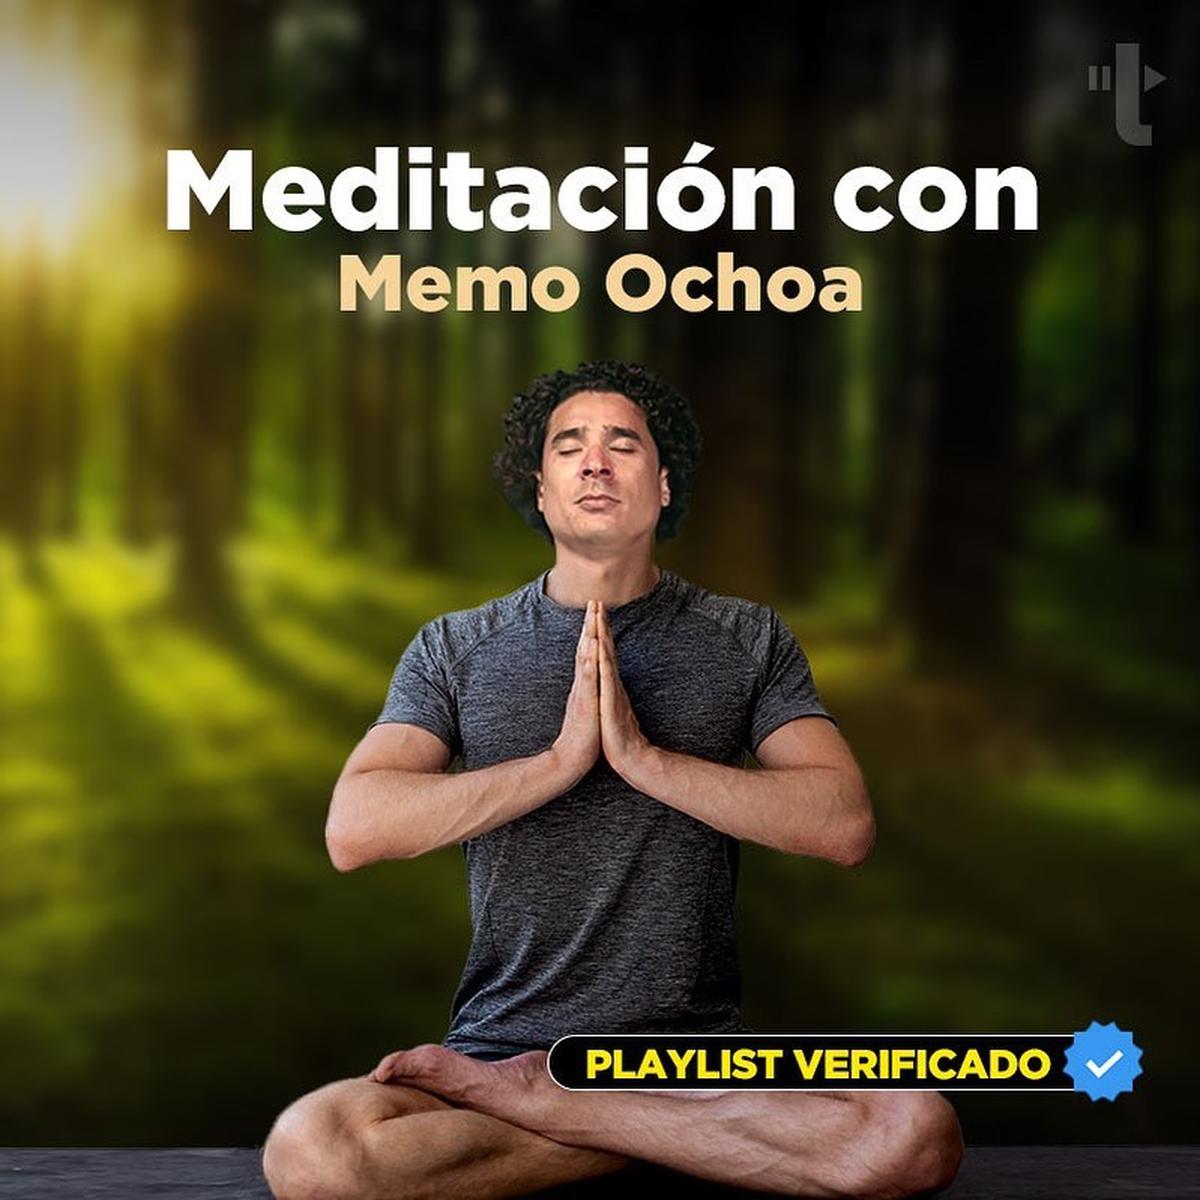  | La playlist de Memo Ochoa. Fuente: Instagram @yosoy8a